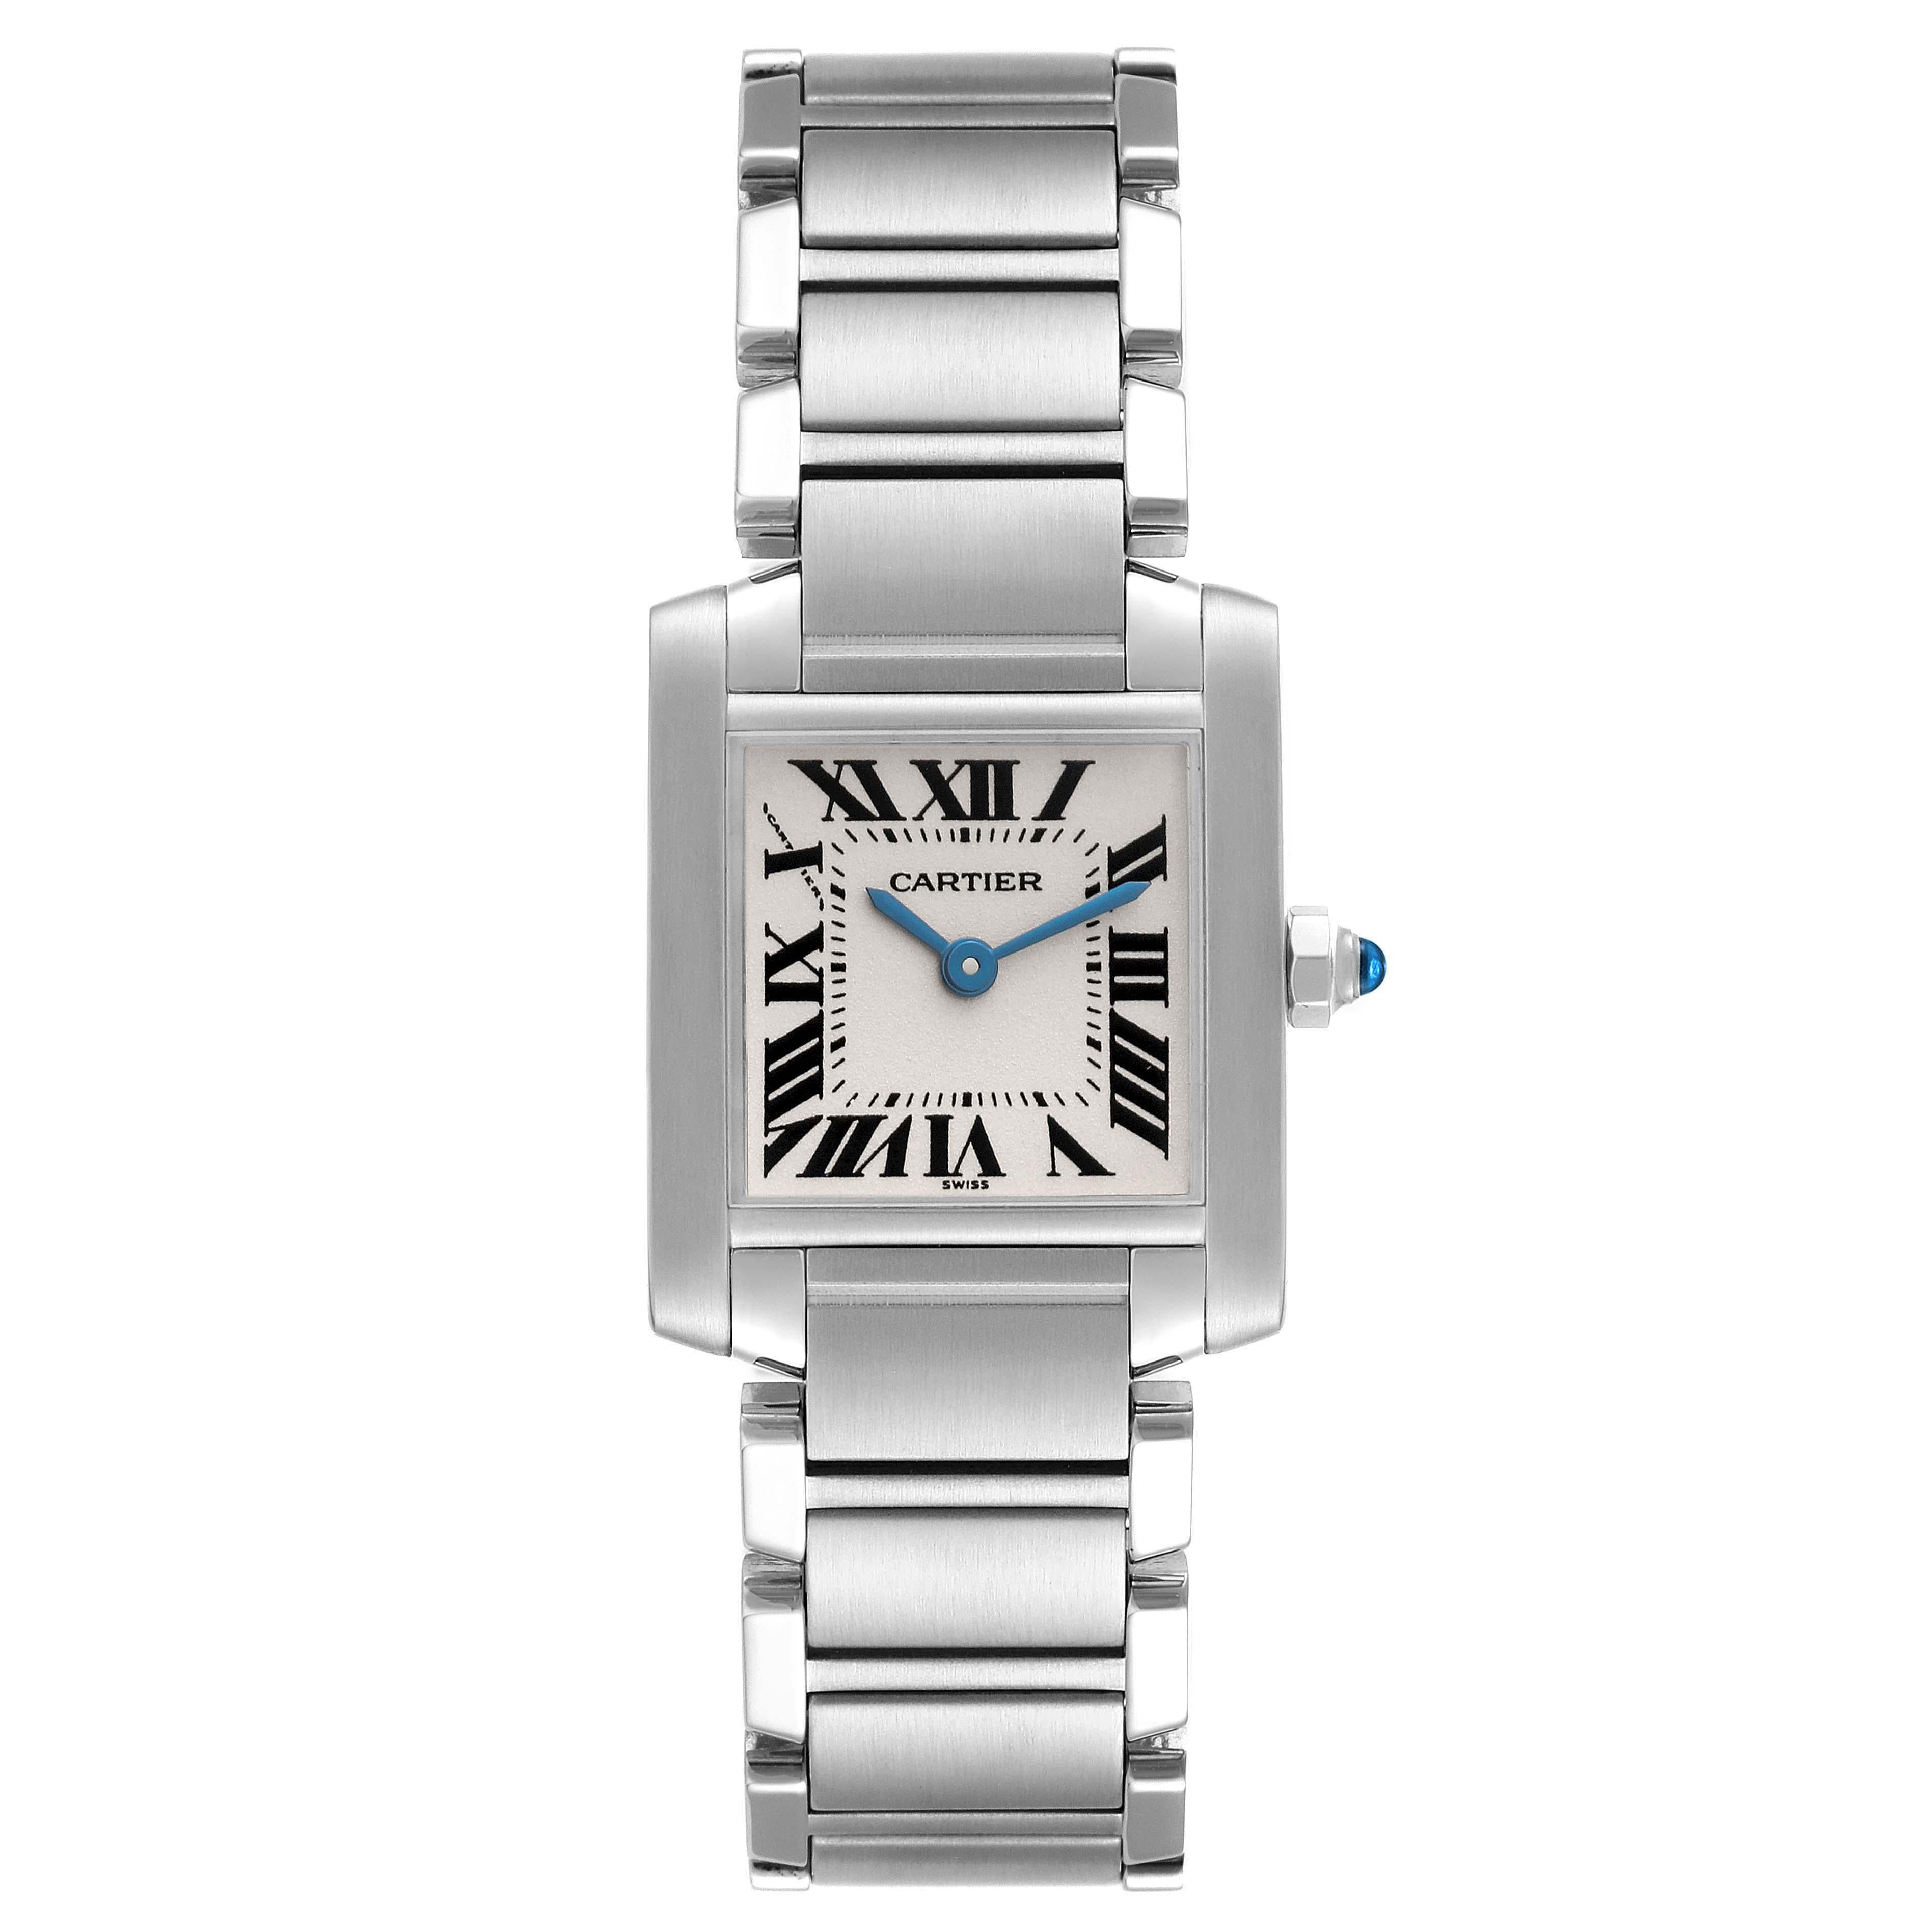 Cartier Tank Francaise Small Silver Dial Steel Ladies Watch W51008Q3. Mouvement à quartz. Boîtier rectangulaire en acier inoxydable de 20,0 x 25,0 mm. Couronne octogonale sertie d'un cabochon de spinelle bleu . Verre saphir résistant aux rayures.